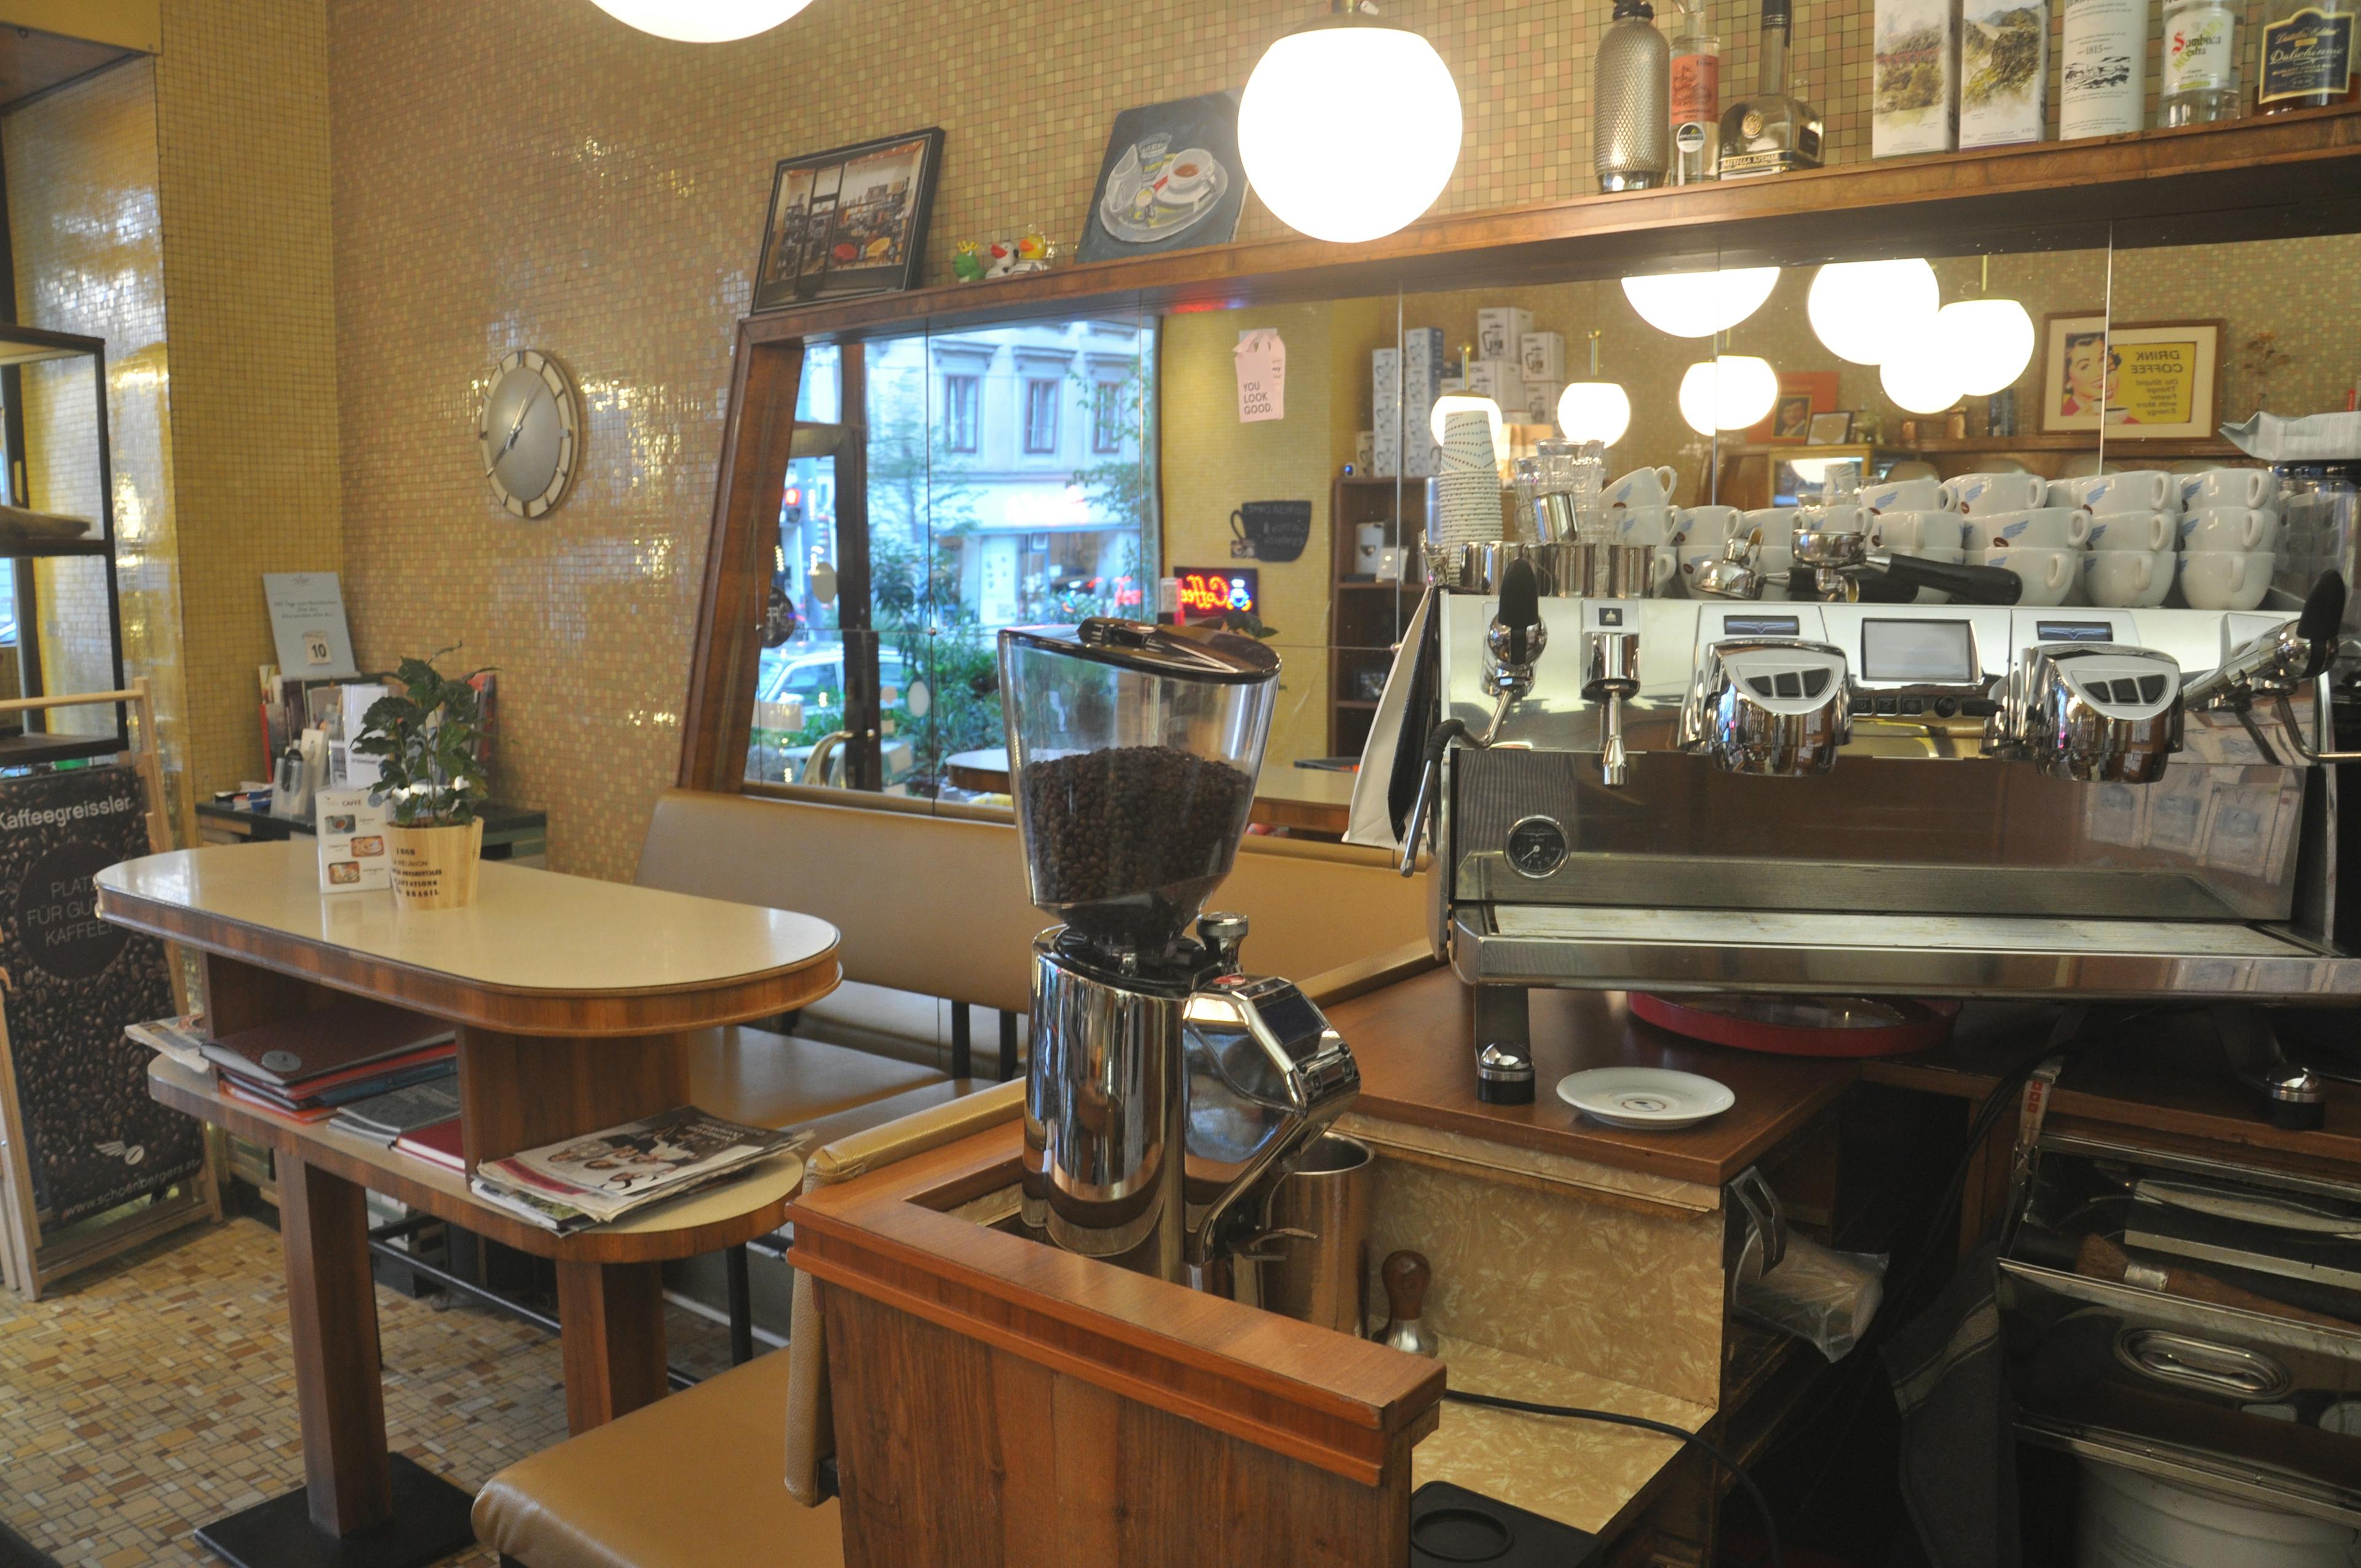 Kaffee zubereiten wie ein Barista | 5 Stunden Kurs in der denkmalgeschützten Caffè Bar in Wien